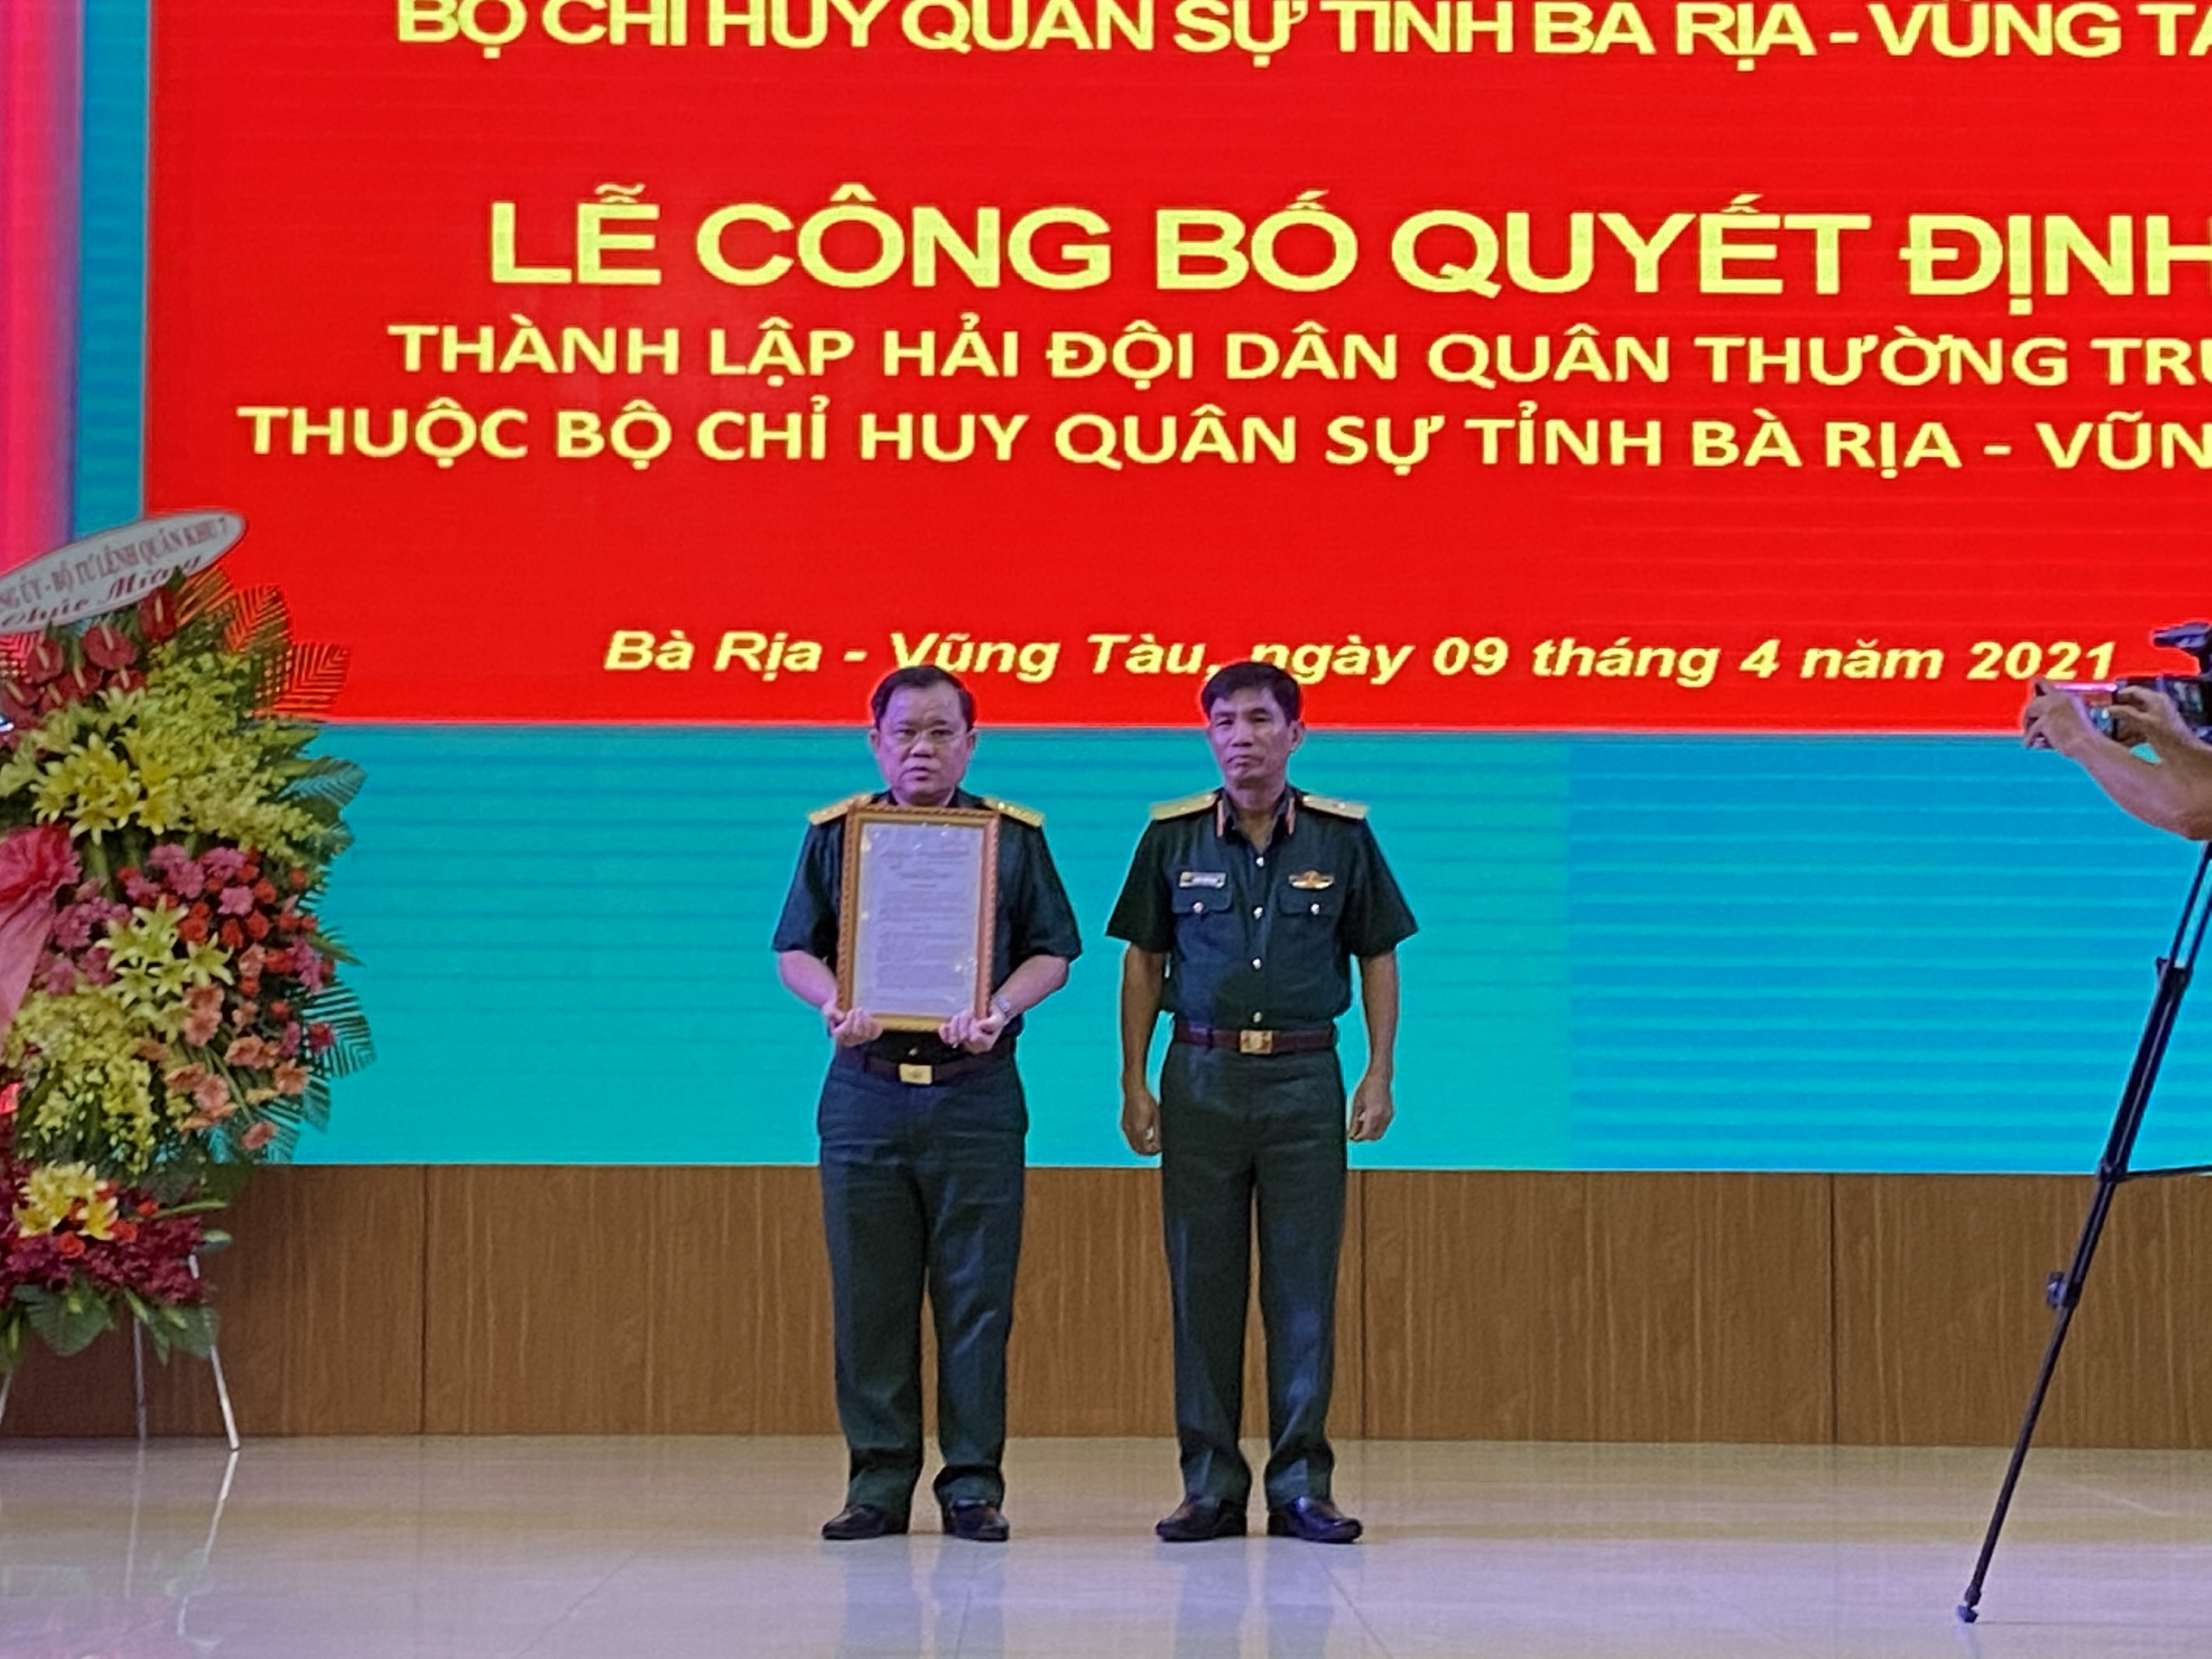 Thiếu tướng Đặng Văn Hùng, Phó Tư lệnh – Tham mưu trưởng Bộ Tư lệnh Quân khu 7 trao Quyết định thành lập Hải đội dân quân thường trực cho Đại tá Nguyễn Tâm Hùng, Chỉ huy trưởng Bộ CHQS tỉnh.